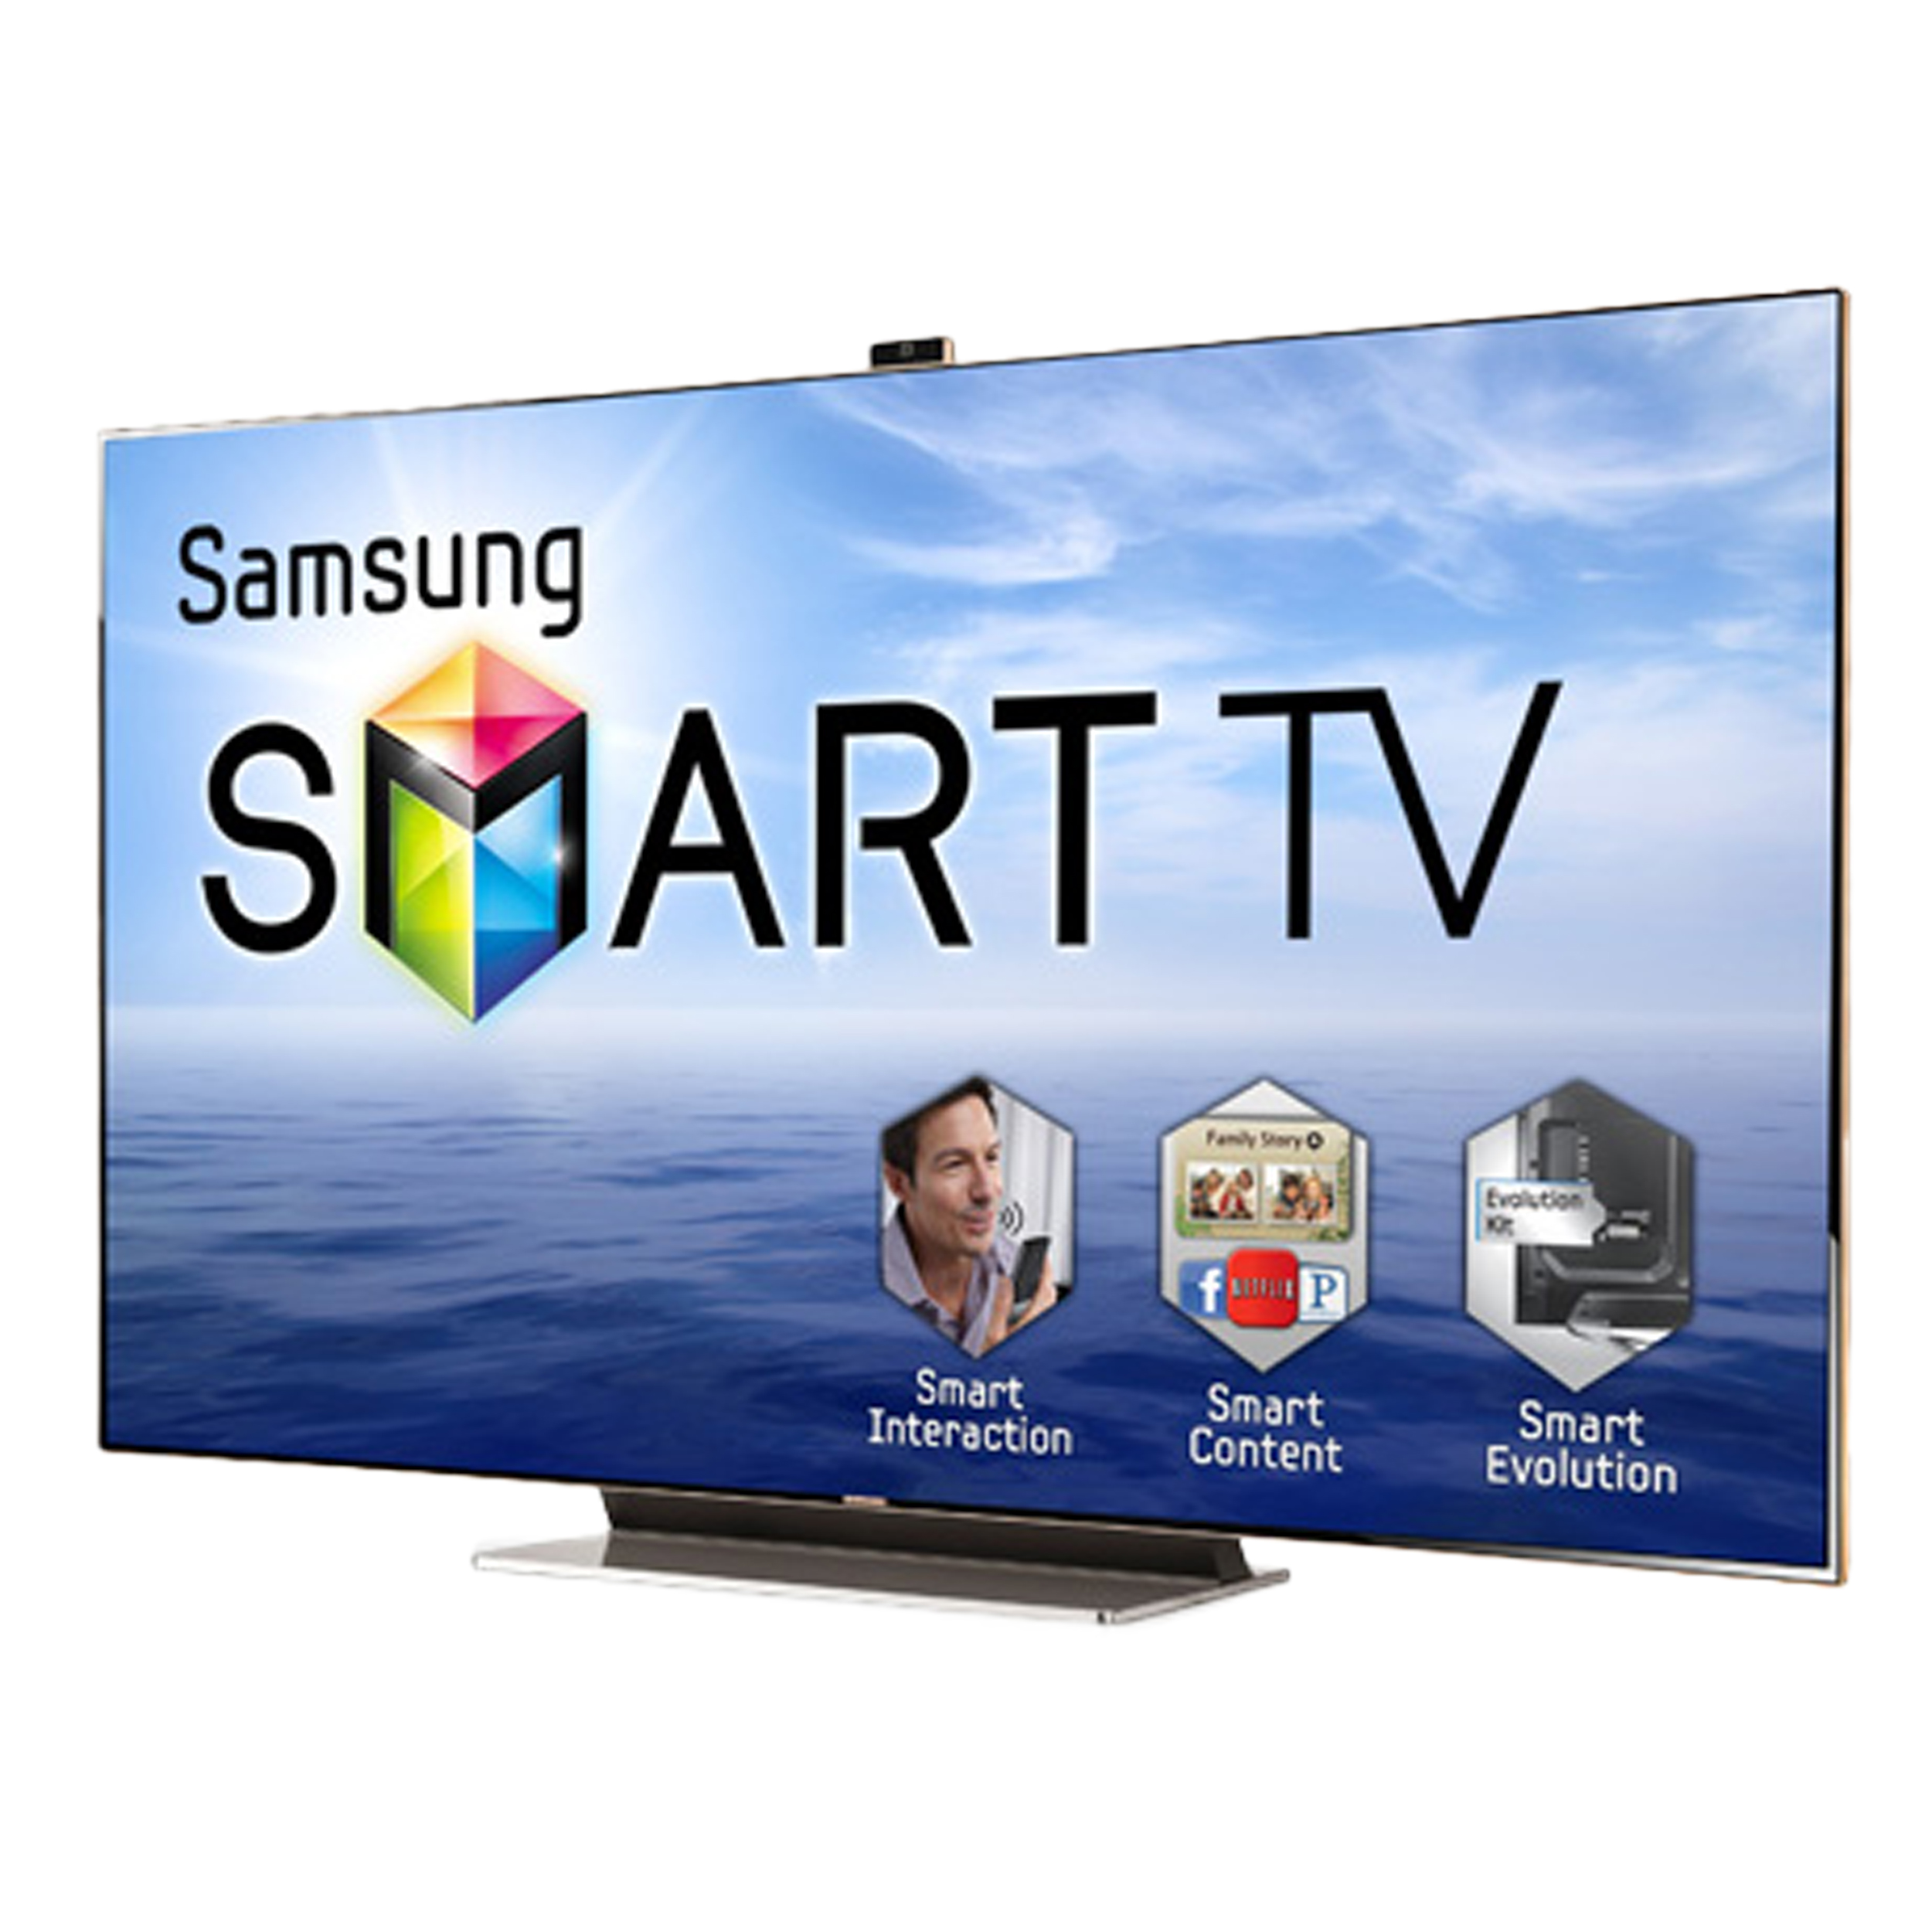 Ilook Tv Samsung Smart